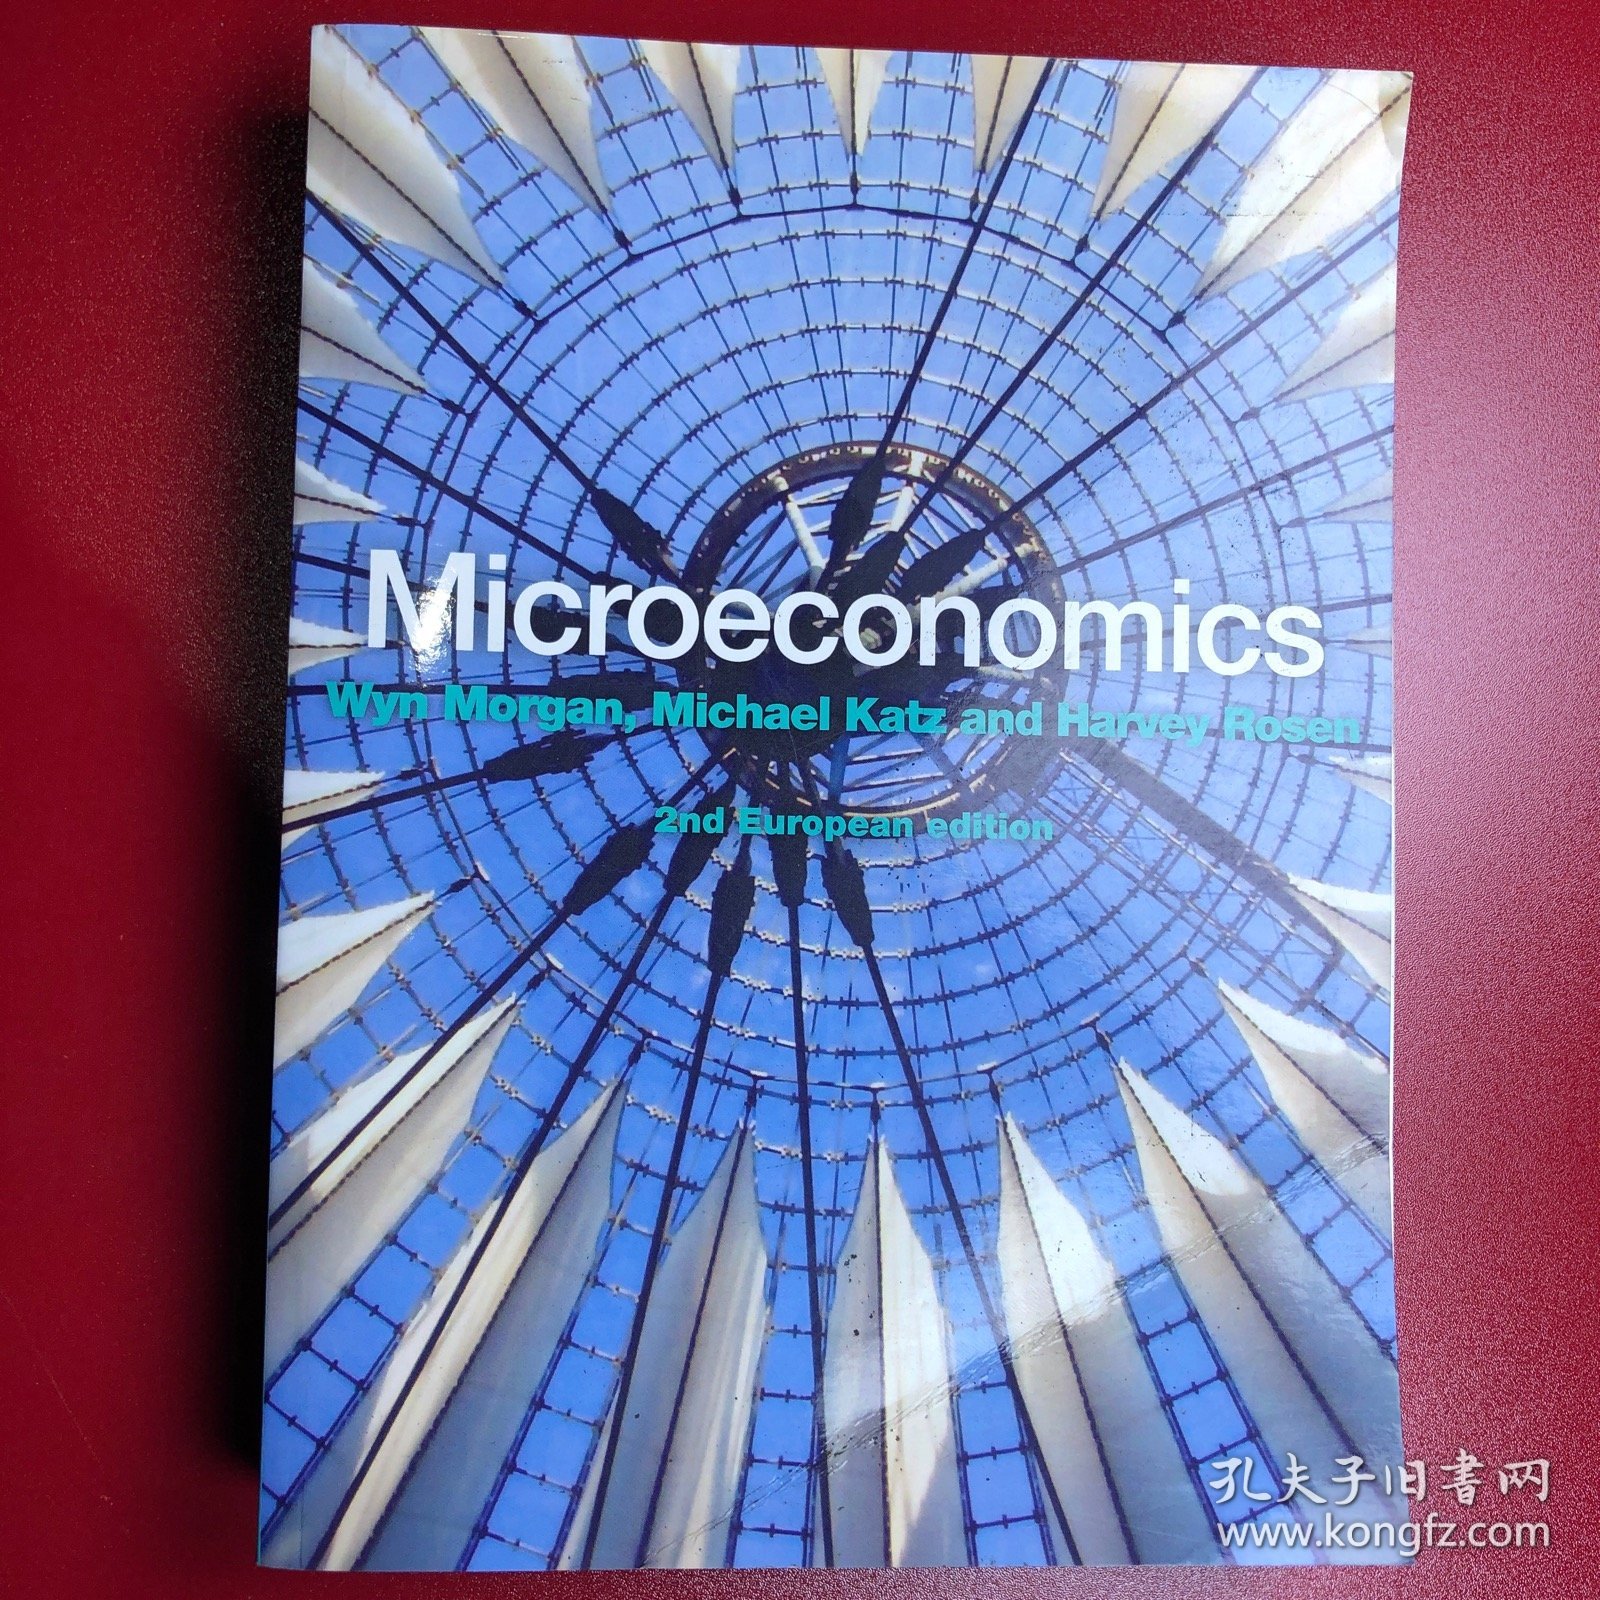 microeconomics Wyn Morgan 2nd